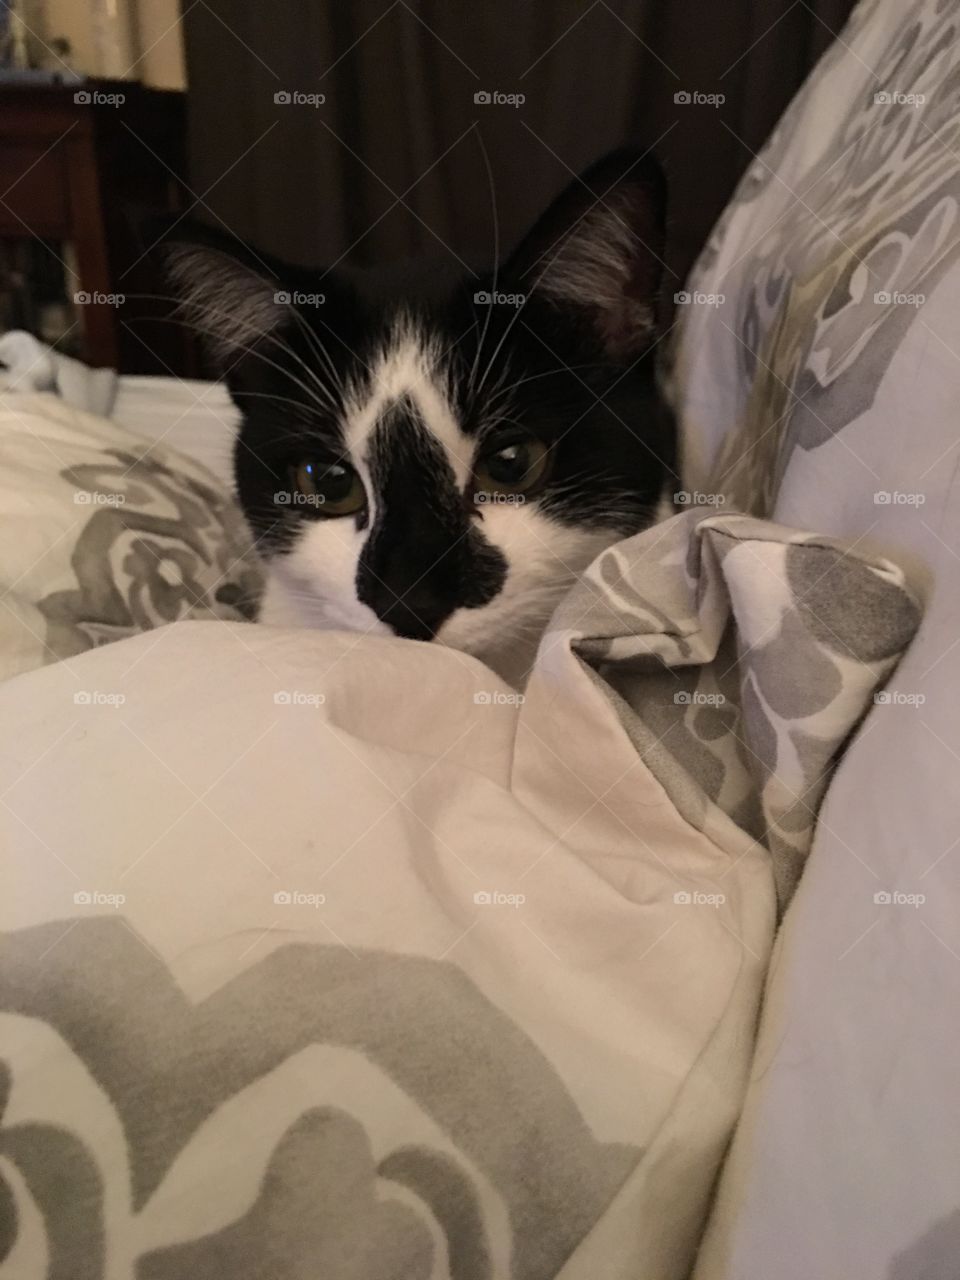 Kitten in bed